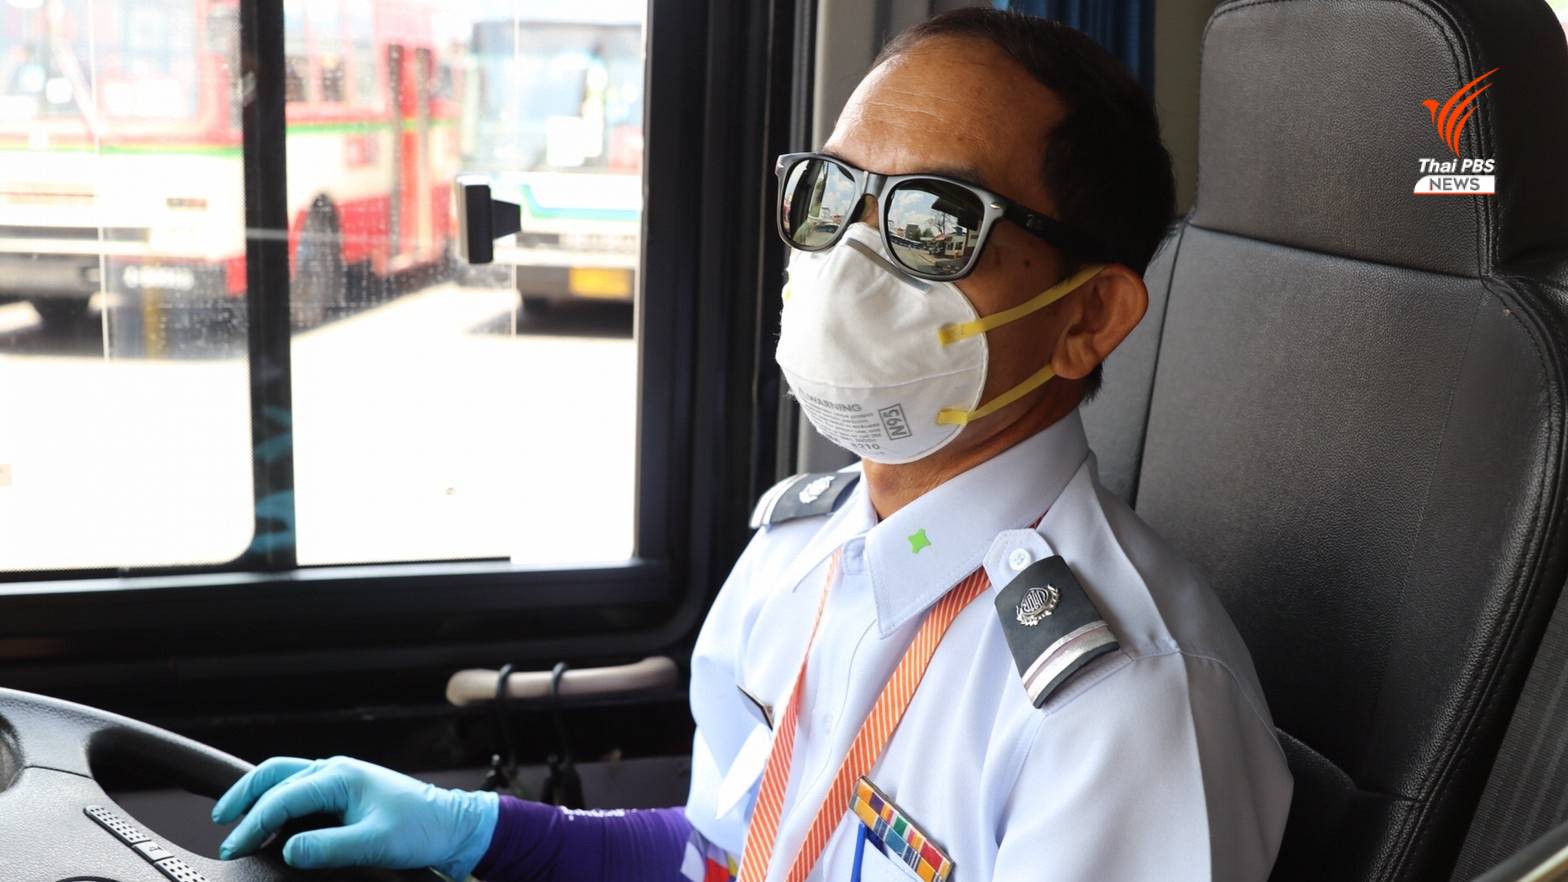 พนักงานขับรถสวมหน้ากากอนามัย และสวมถุงมือเพื่อป้องกันการแพร่ระบาดของไวรัส COVID - 19